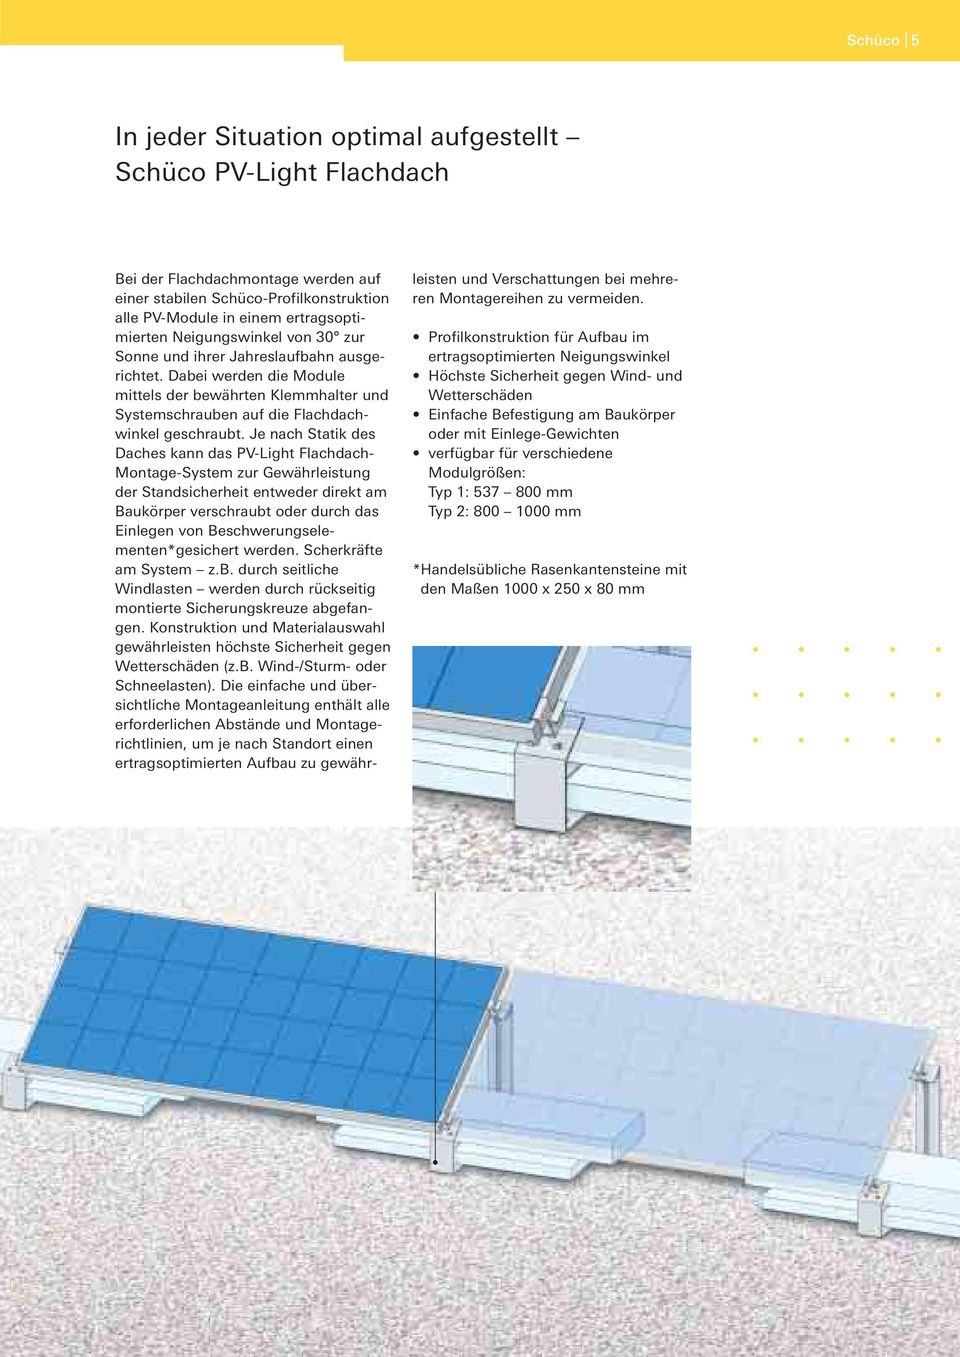 Je nach Statik des Daches kann das PV-Light Flachdach- Montage-System zur Gewährleistung der Standsicherheit entweder direkt am Baukörper verschraubt oder durch das Einlegen von